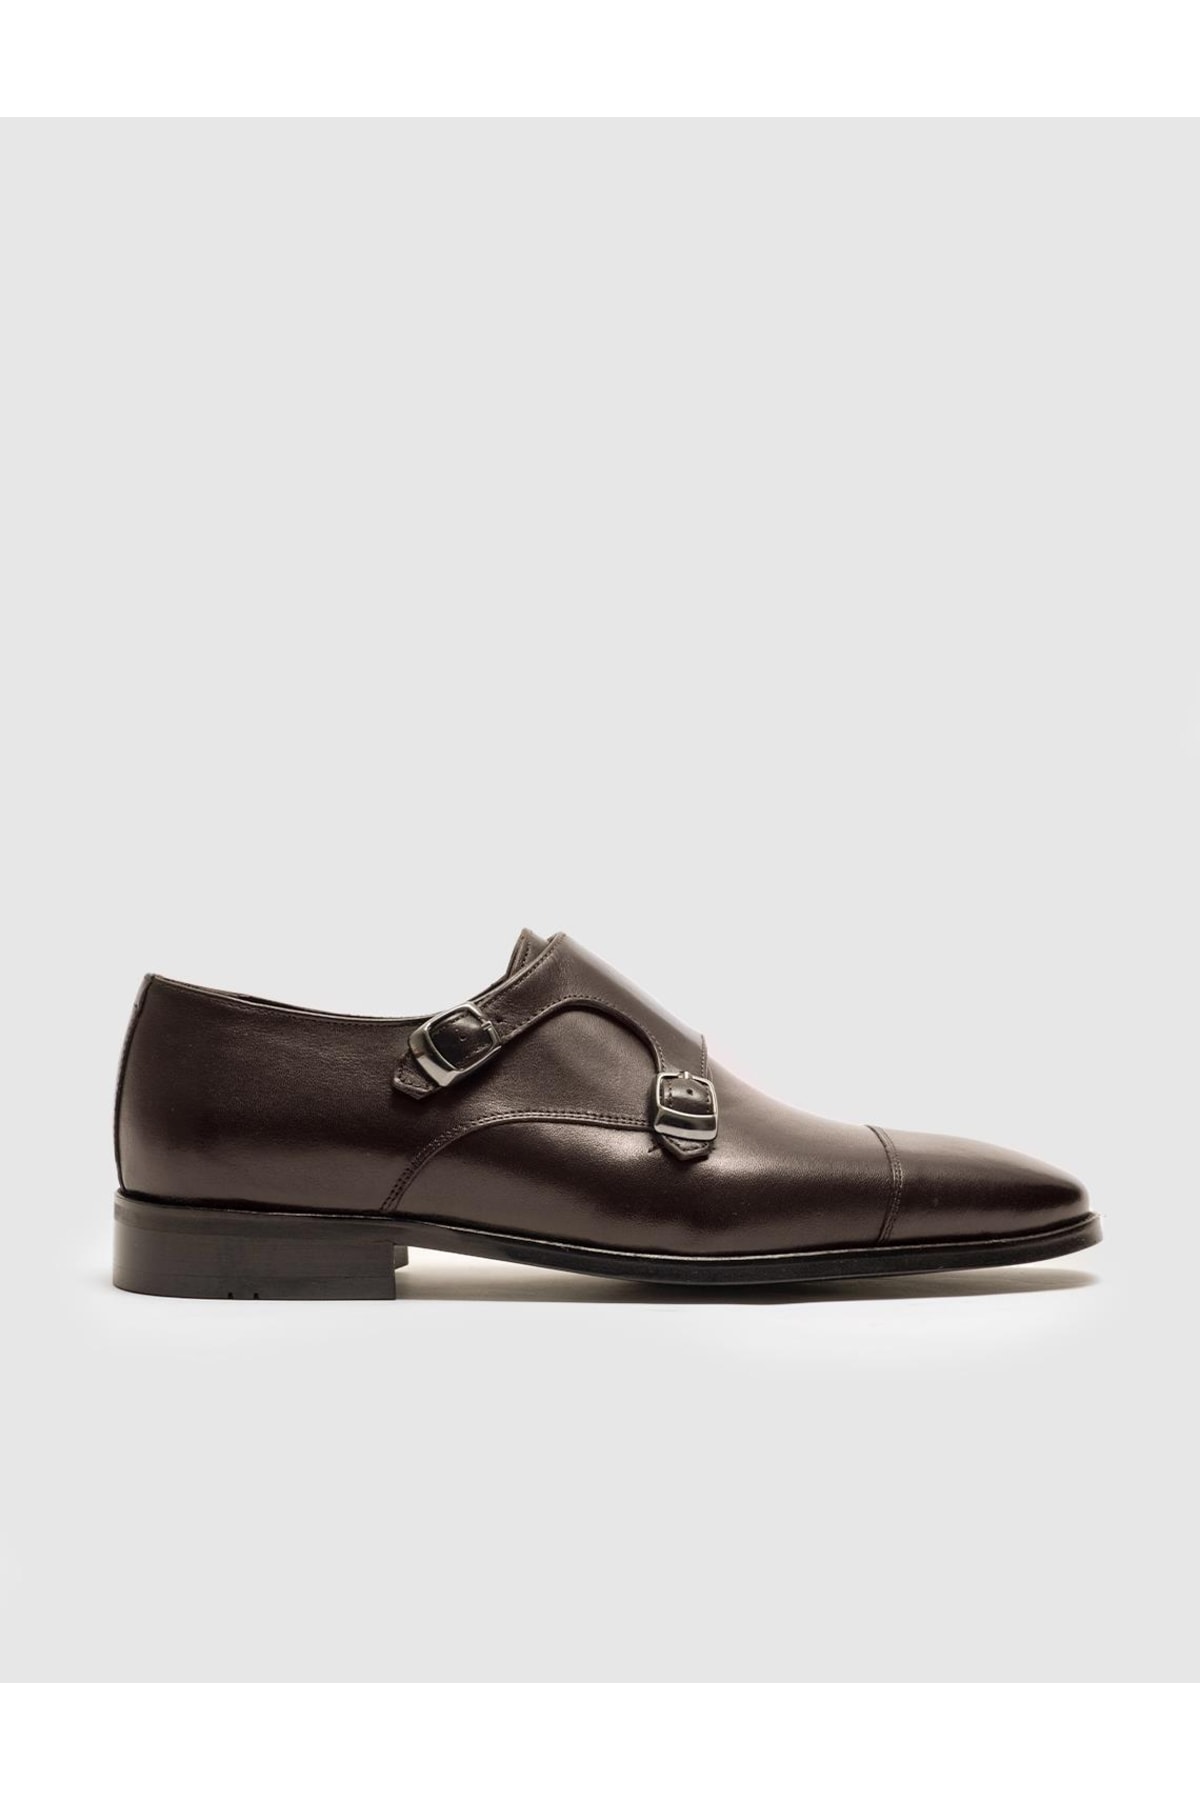 Cabani Hakiki Deri Kahverengi Çift Tokalı Erkek Klasik Ayakkabı ZN8910